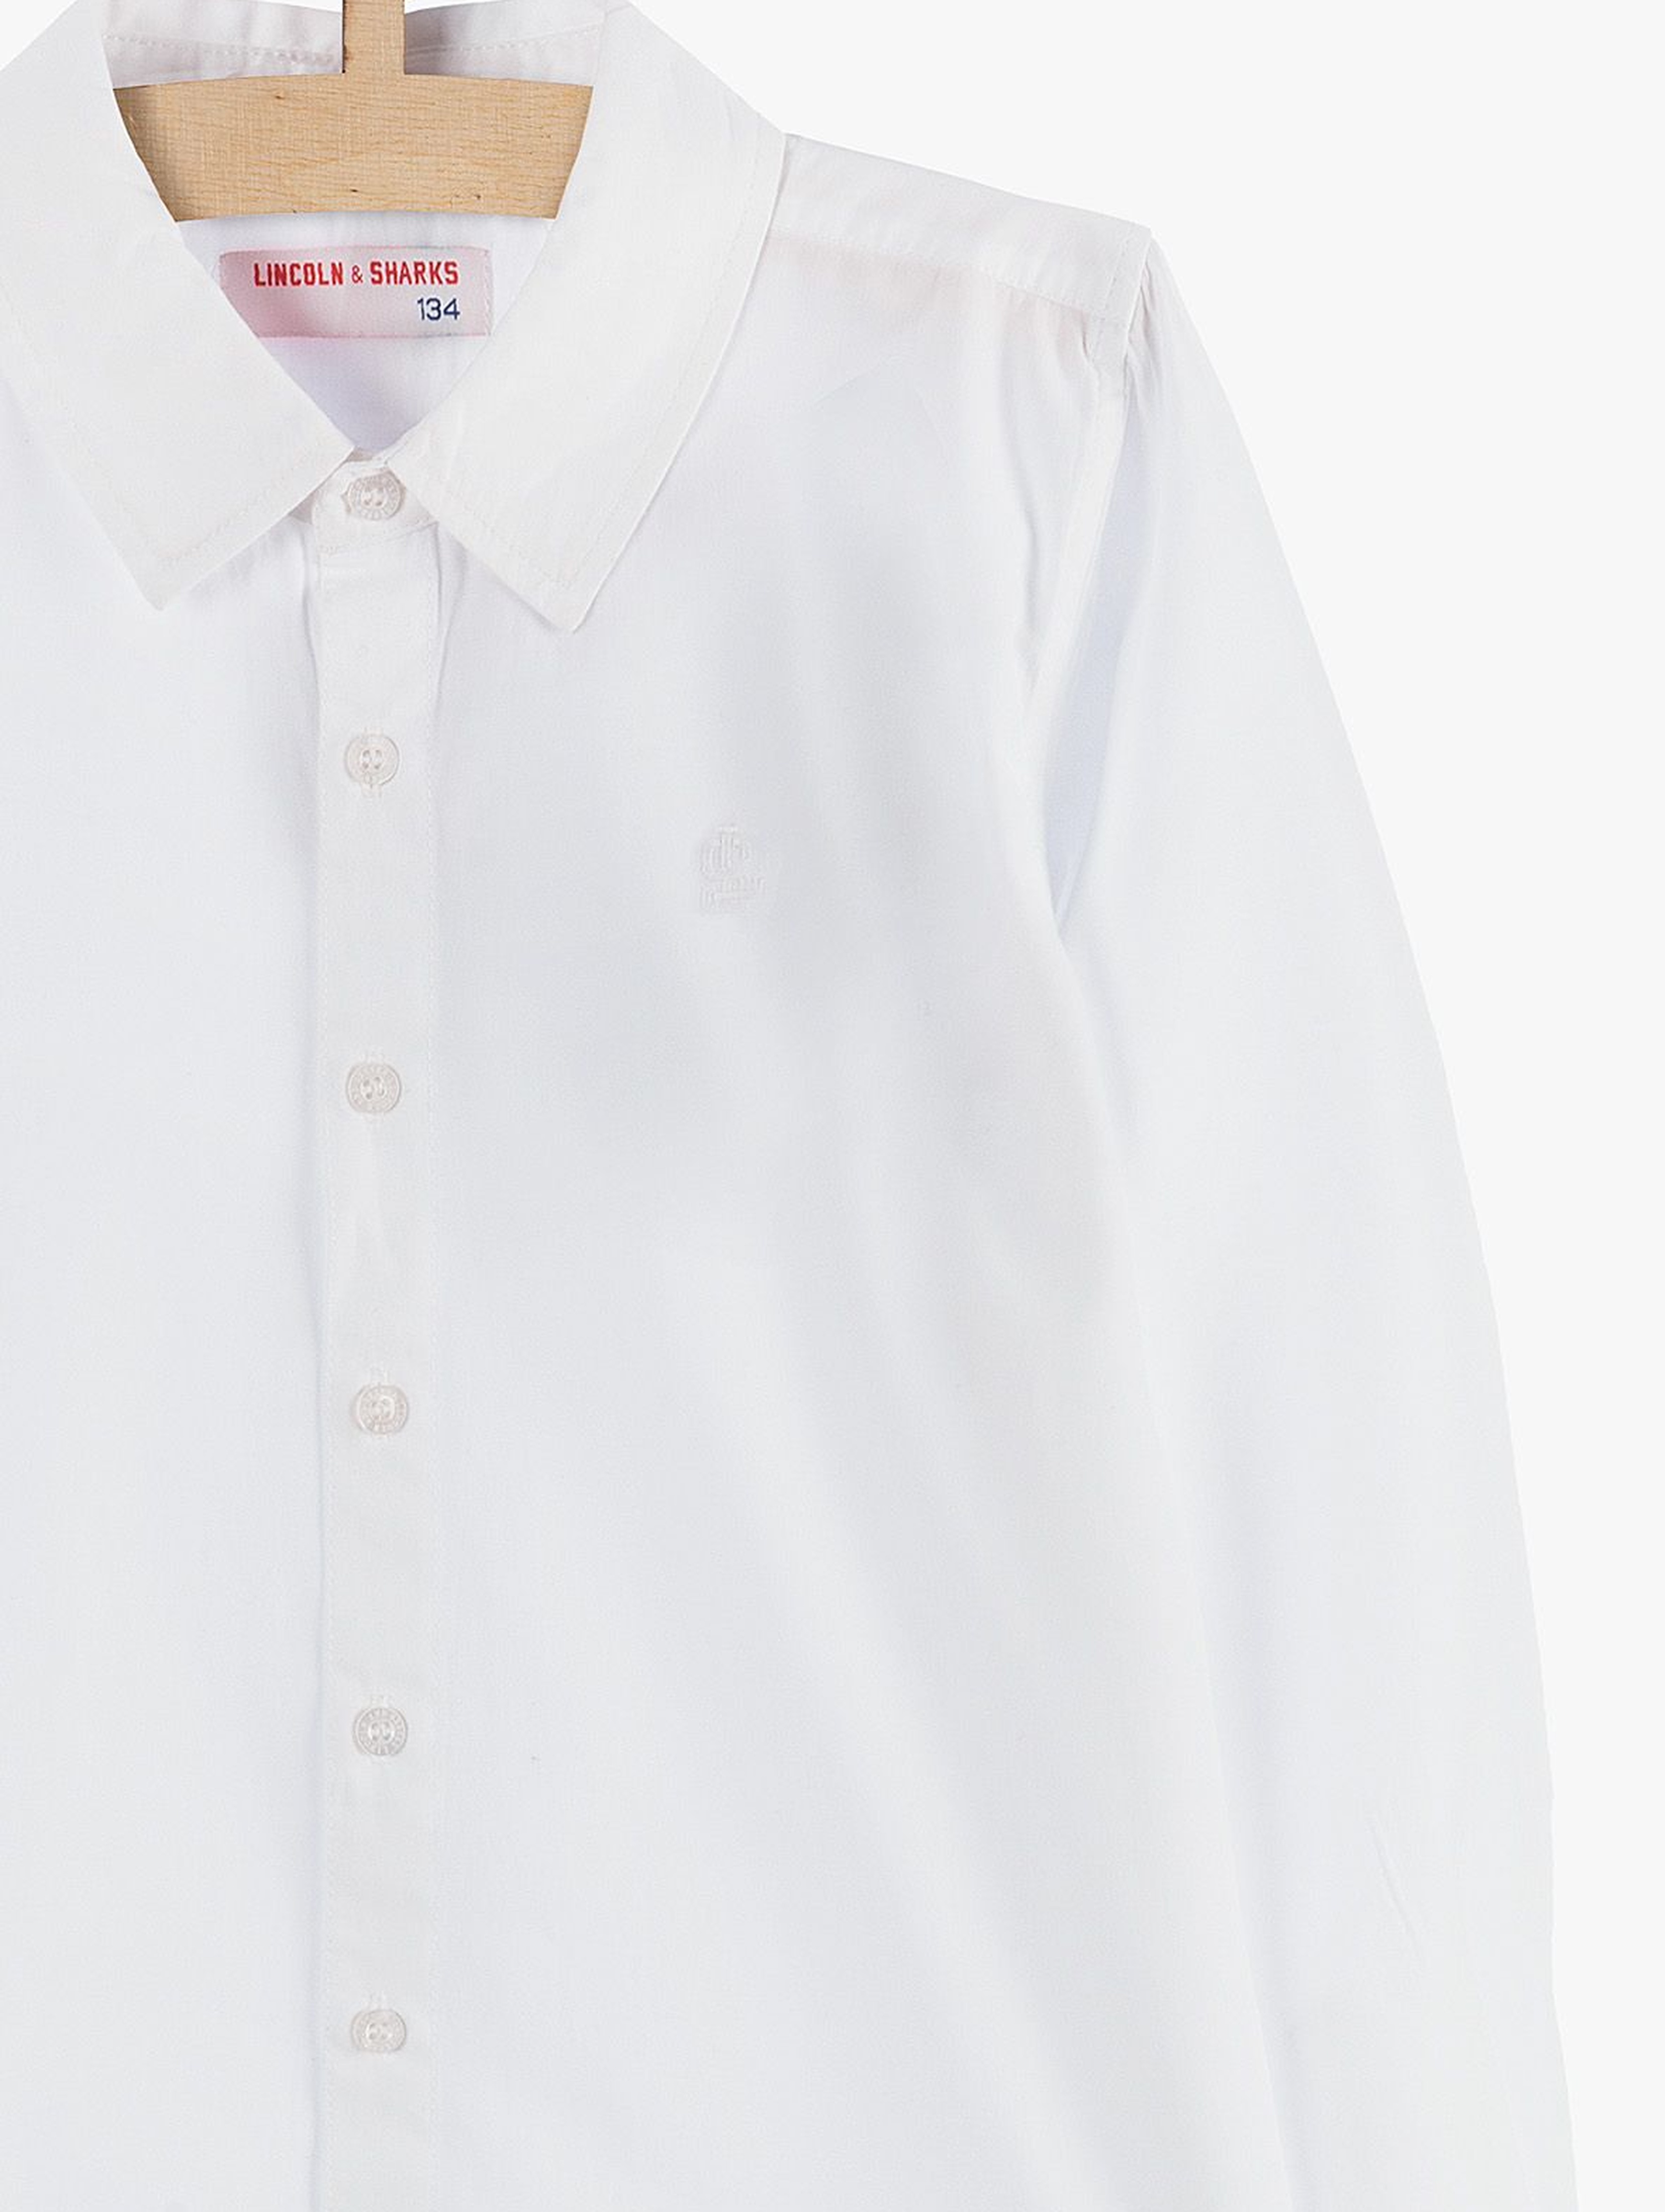 Koszula chłopięca rozpinana biała-elegancka